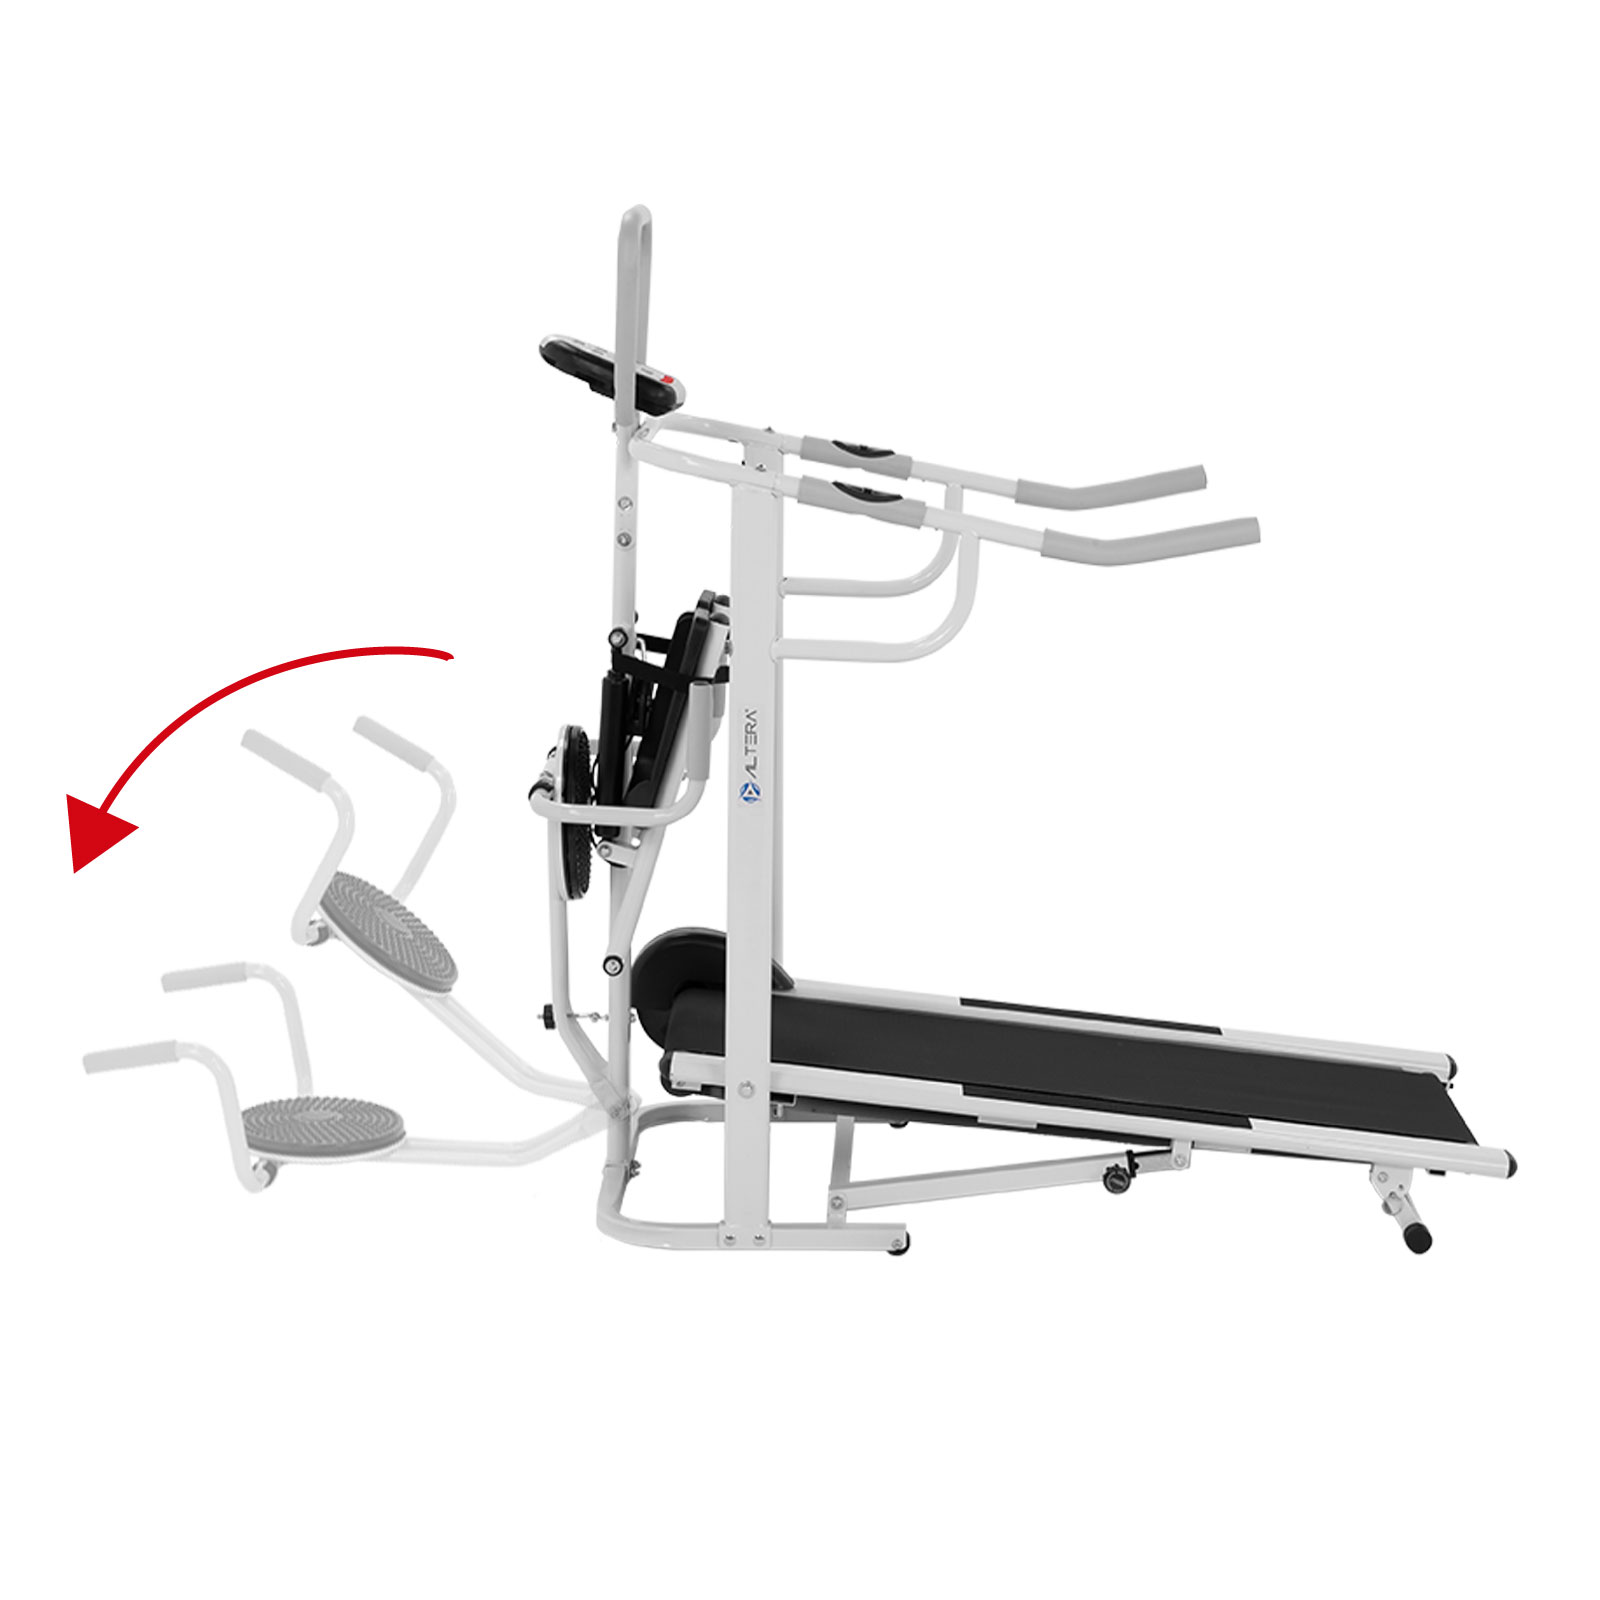 Caminadora Escaladora Mecanica CMMT1 Multifuncional Gym Correr